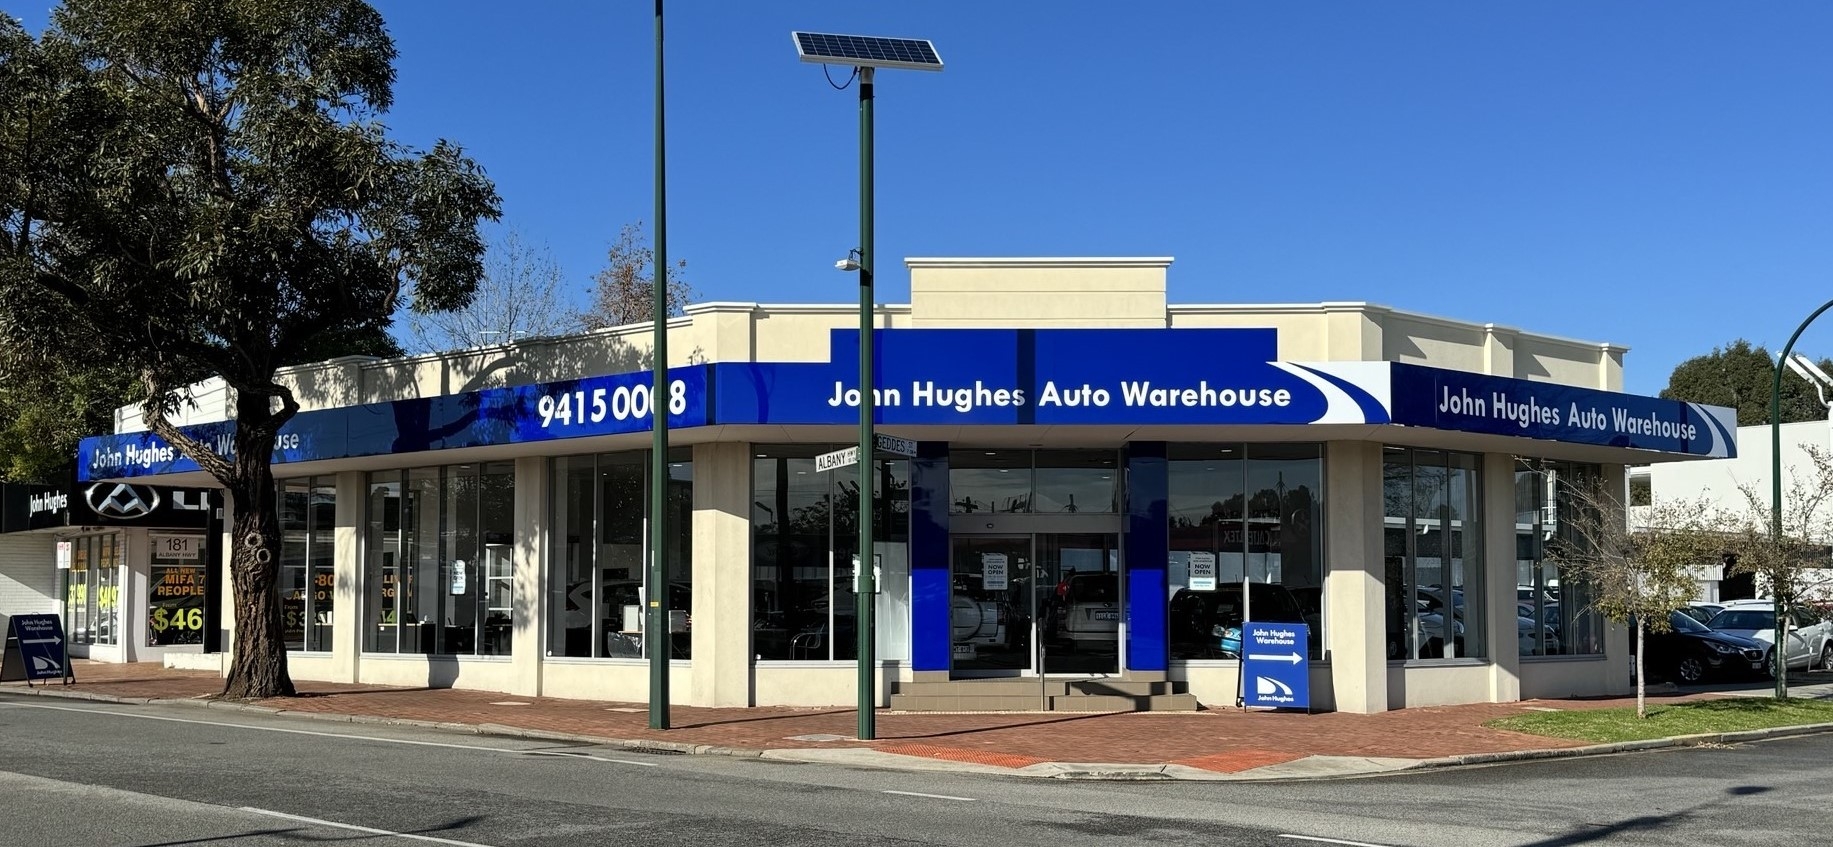 John Hughes Auto Warehouse